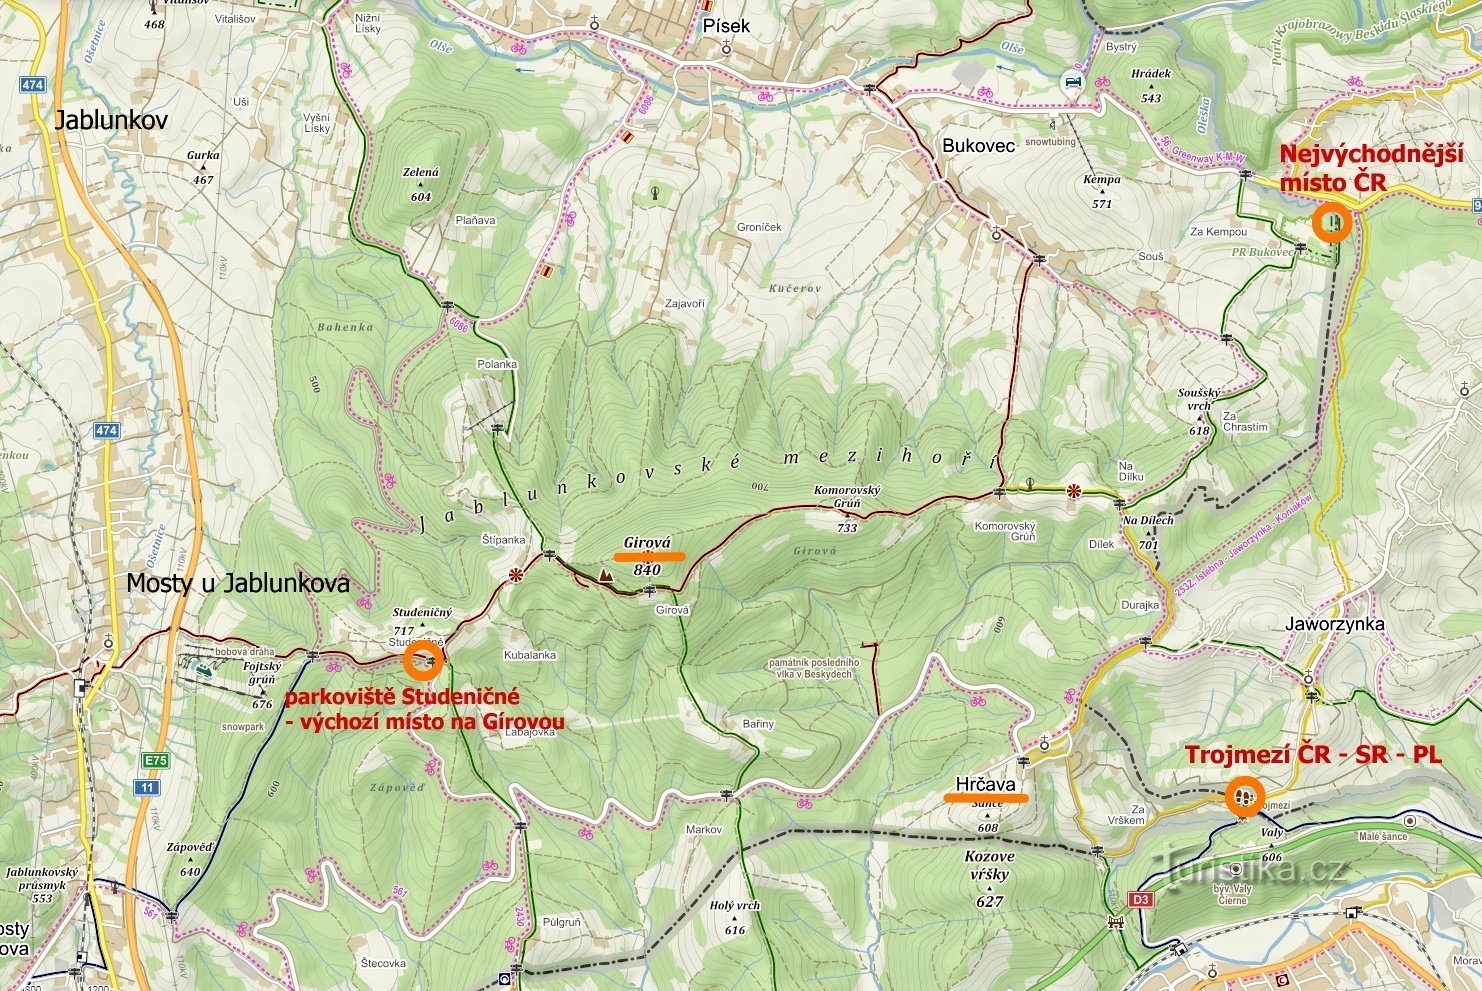 mappa dei luoghi visitati: Punto più orientale della Repubblica Ceca, Hrčava - Trojmezí, Jablunkovské m